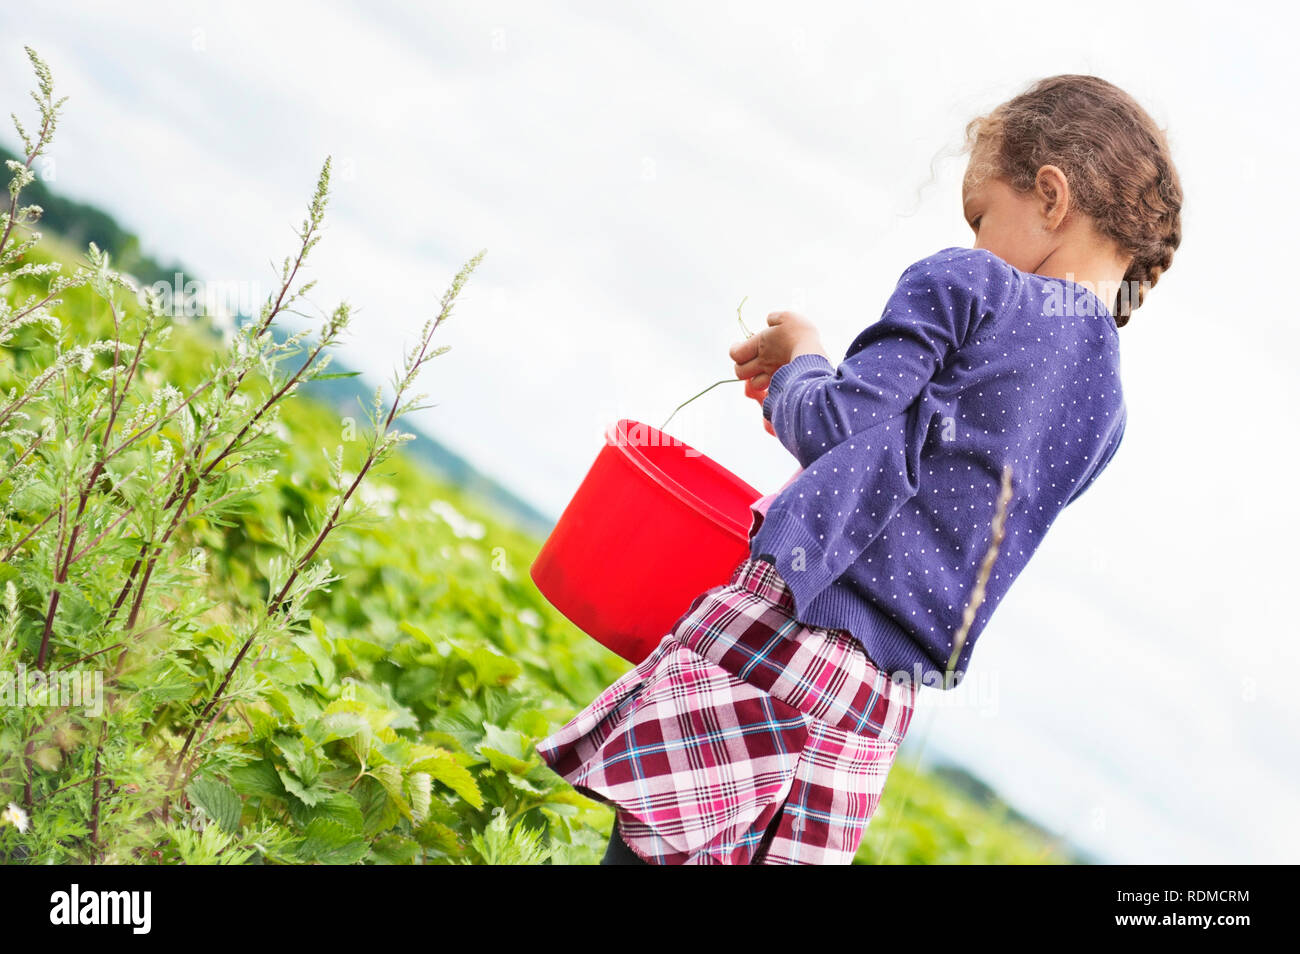 Girl picking strawberries Stock Photo